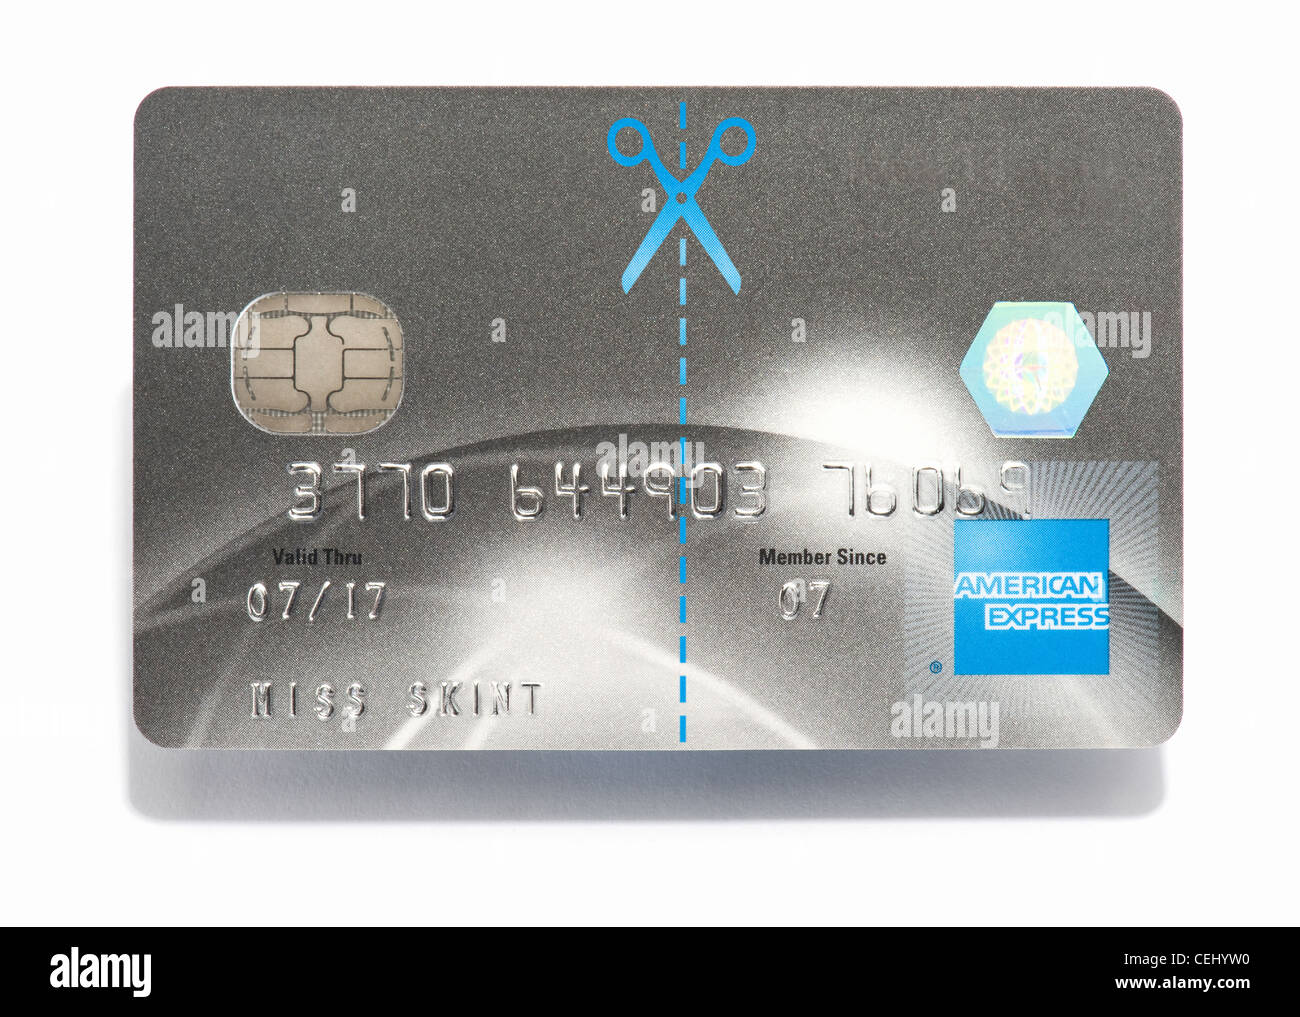 Il taglio a forbice di una carta di credito American Express Foto Stock